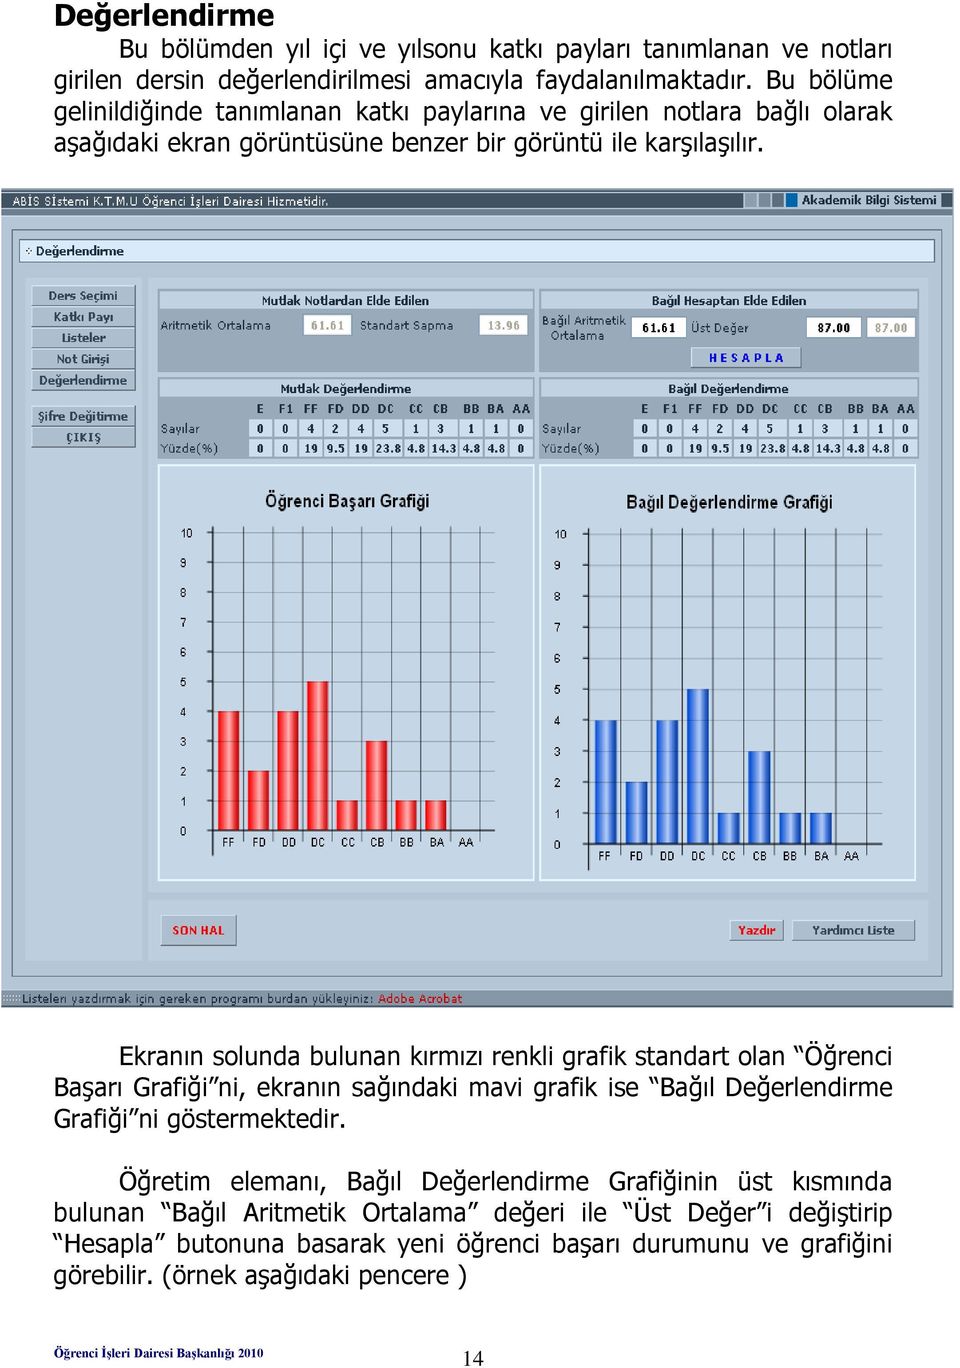 Ekranın solunda bulunan kırmızı renkli grafik standart olan Öğrenci Başarı Grafiği ni, ekranın sağındaki mavi grafik ise Bağıl Değerlendirme Grafiği ni göstermektedir.